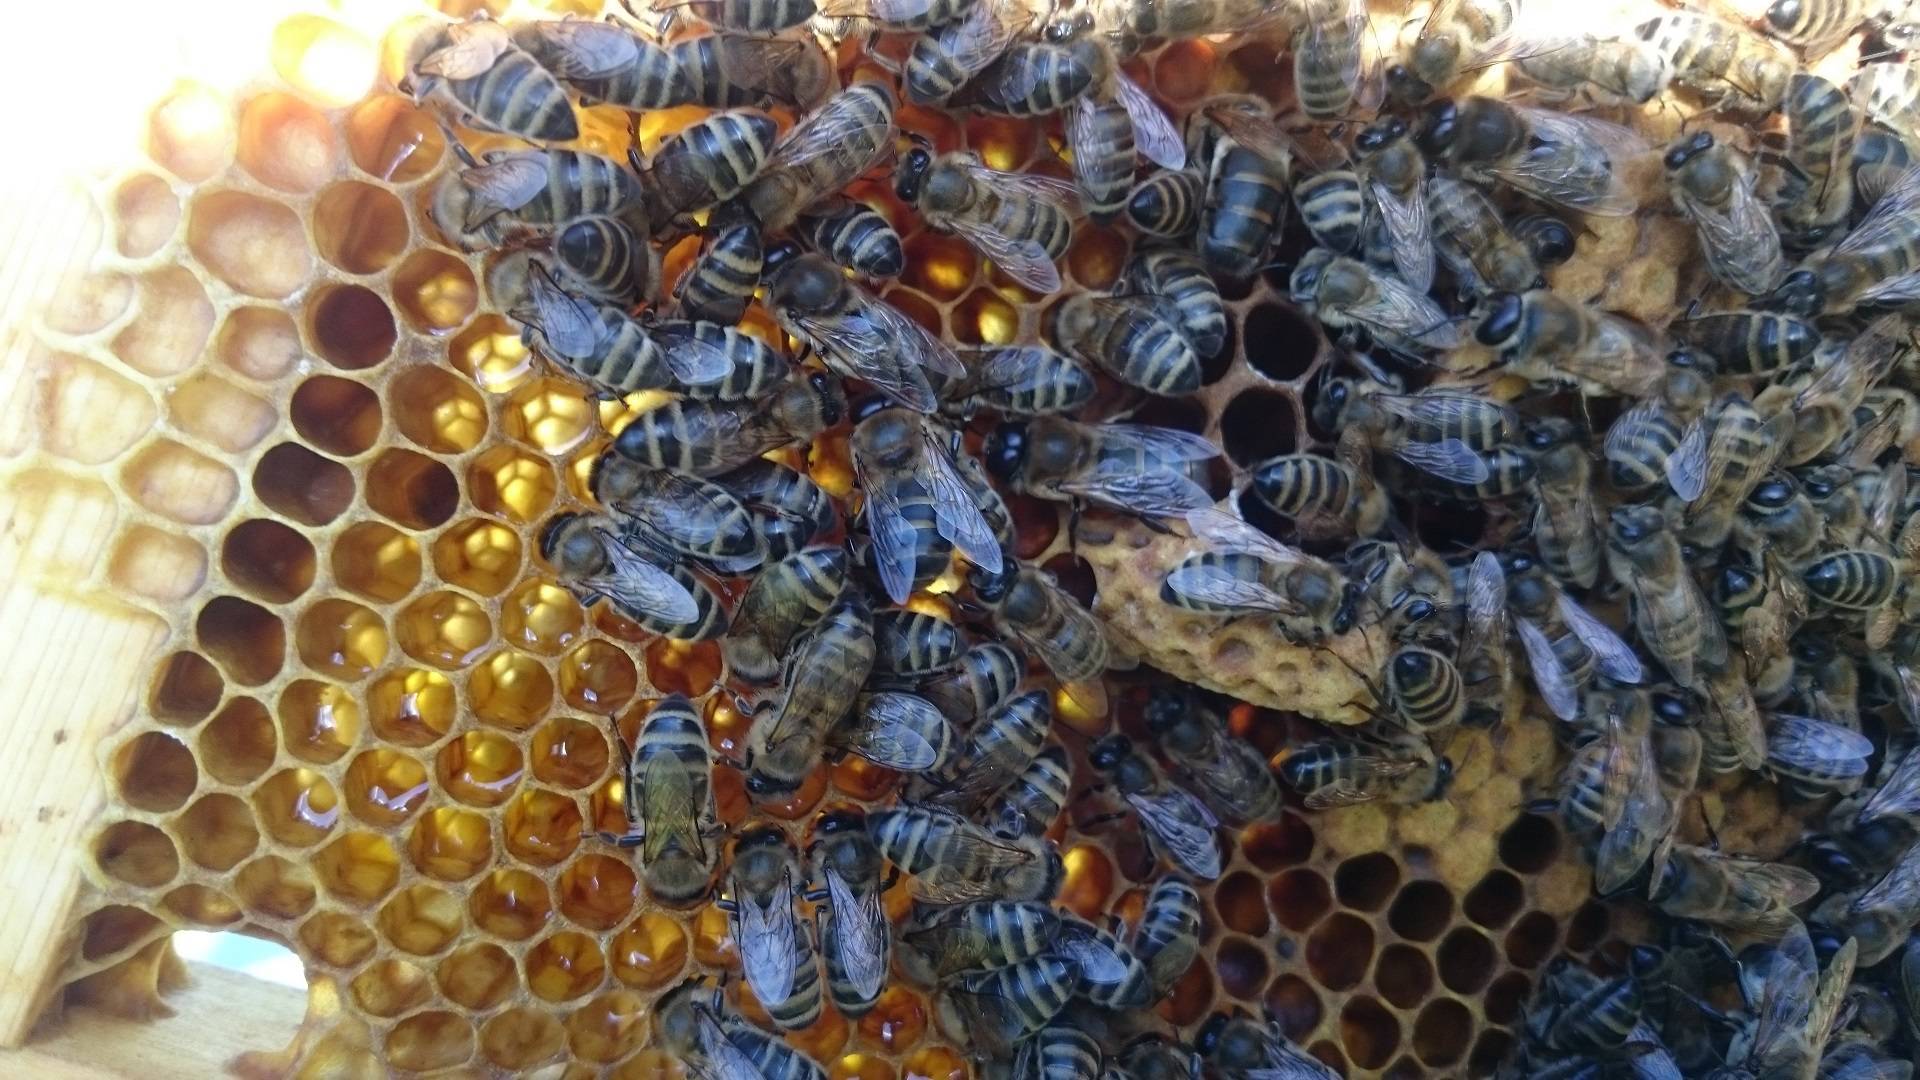 Виды кормушек для пчел, и их чертежи чтобы сделать своими руками